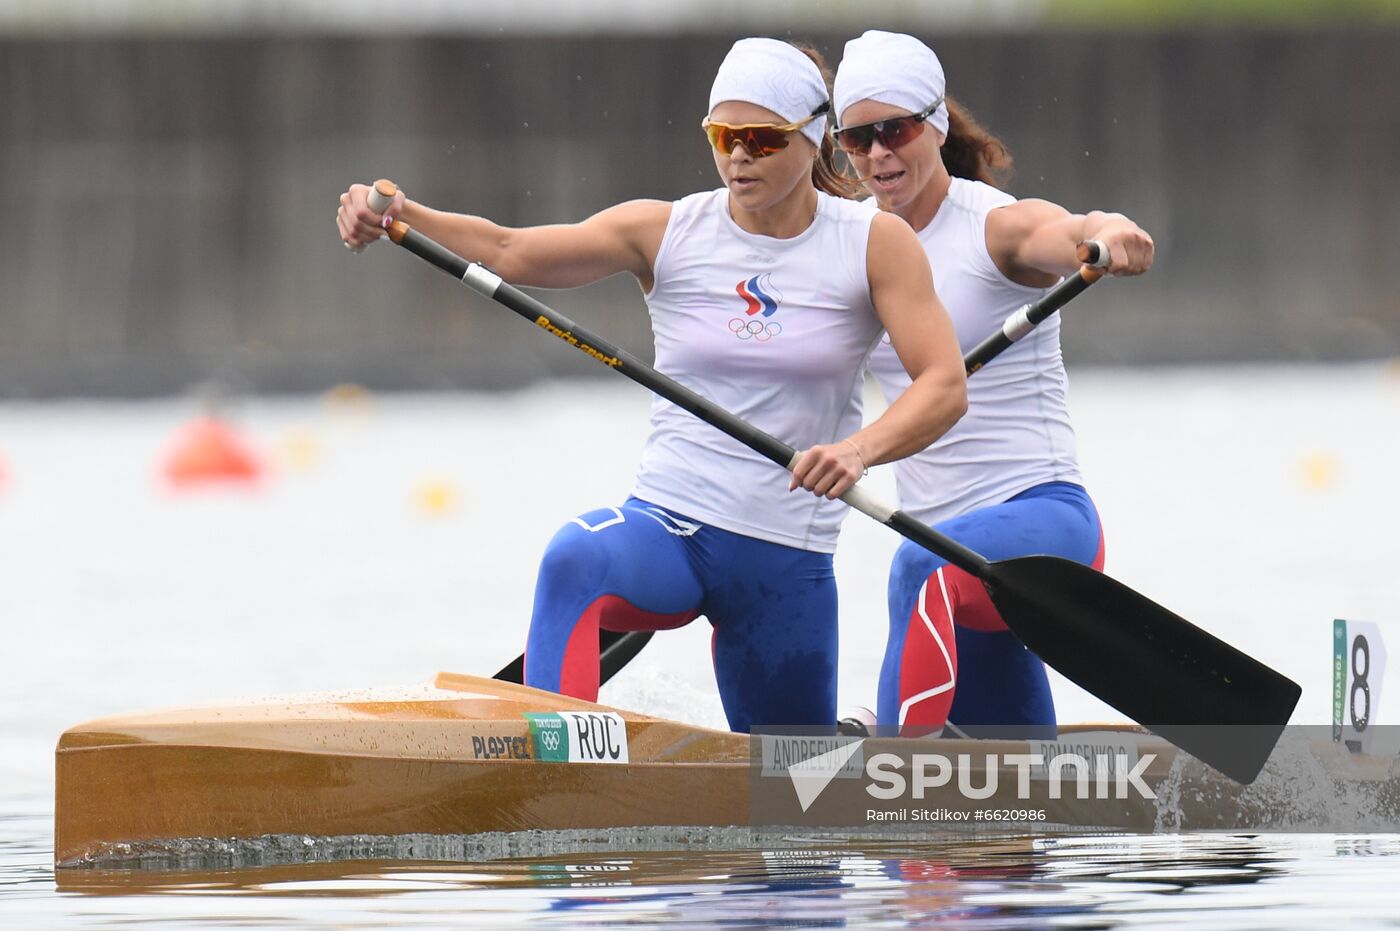 Japan Olympics 2020 Canoe Sprint